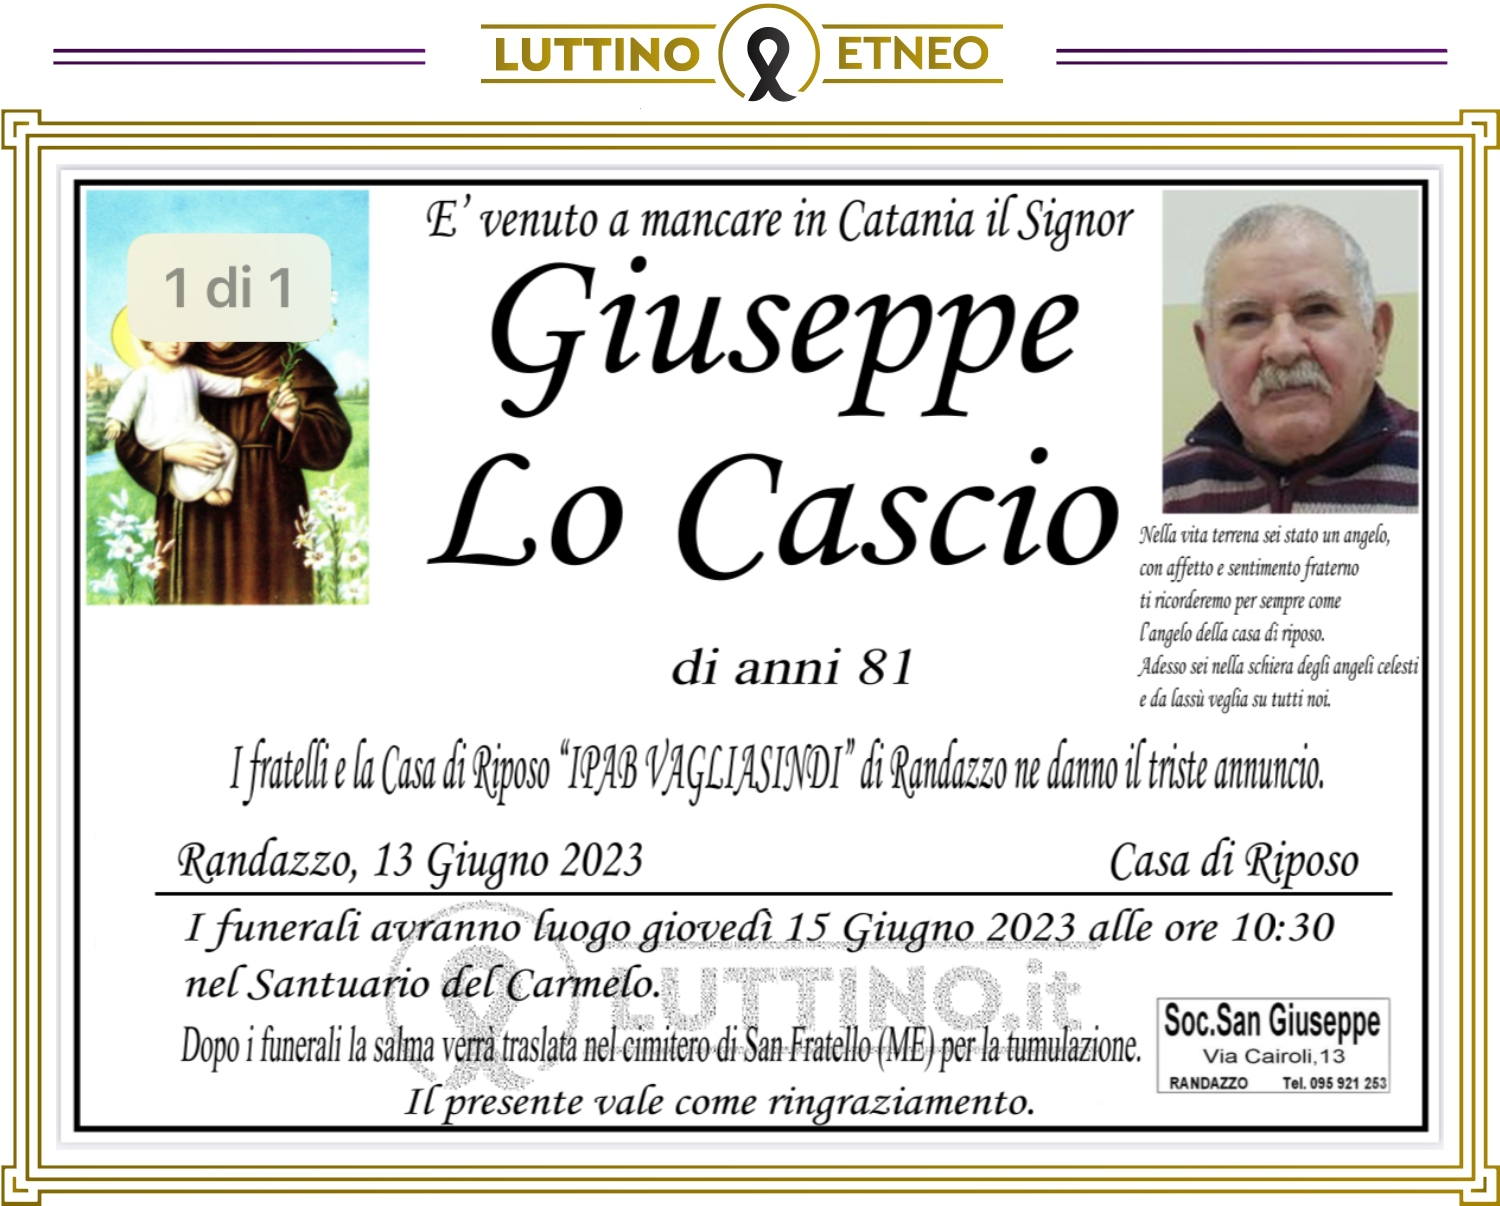 Giuseppe Lo Cascio